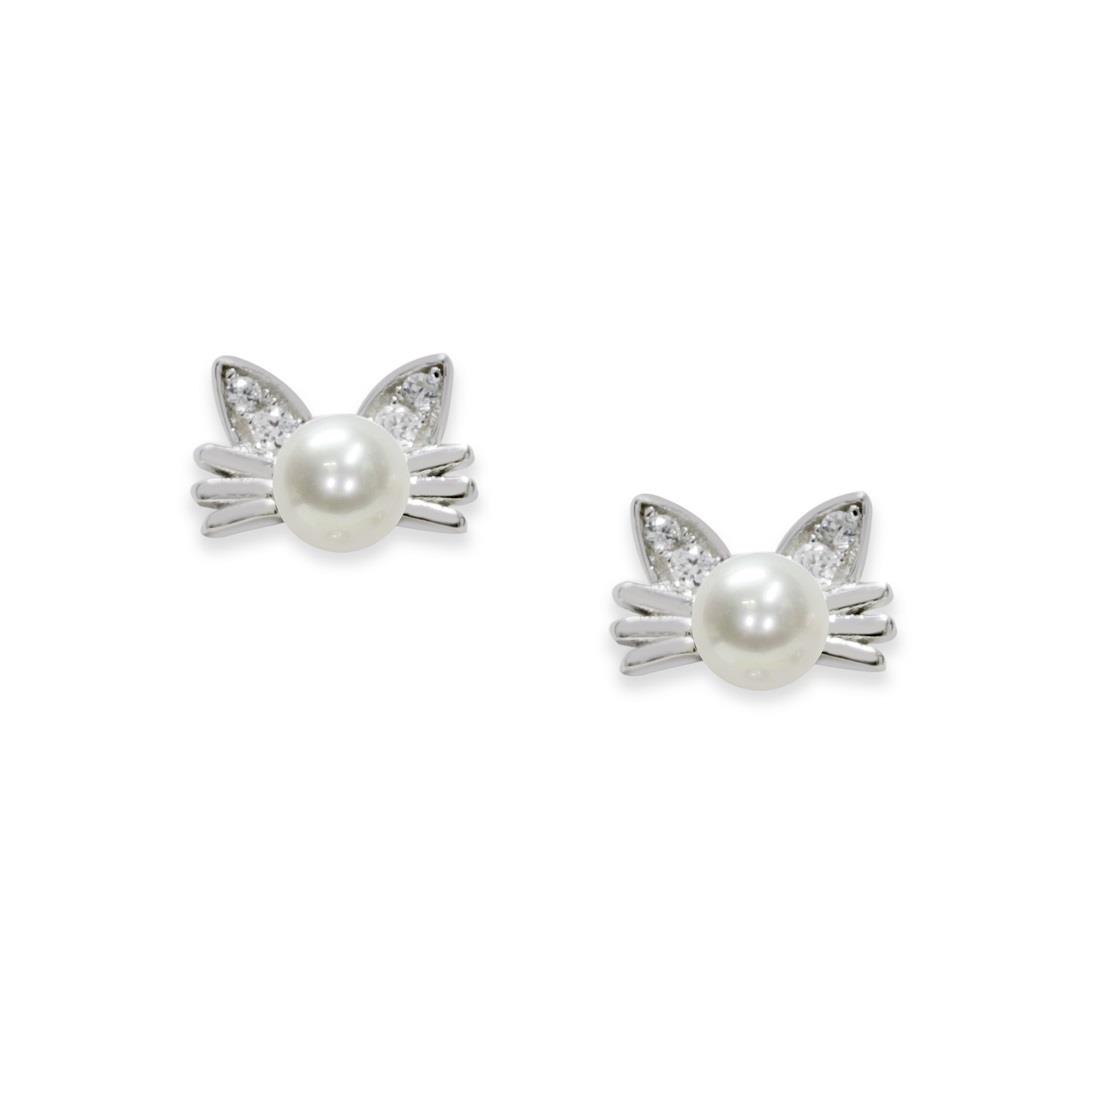 Orecchini in argento gattini con zirconi e perle - MAYUMI